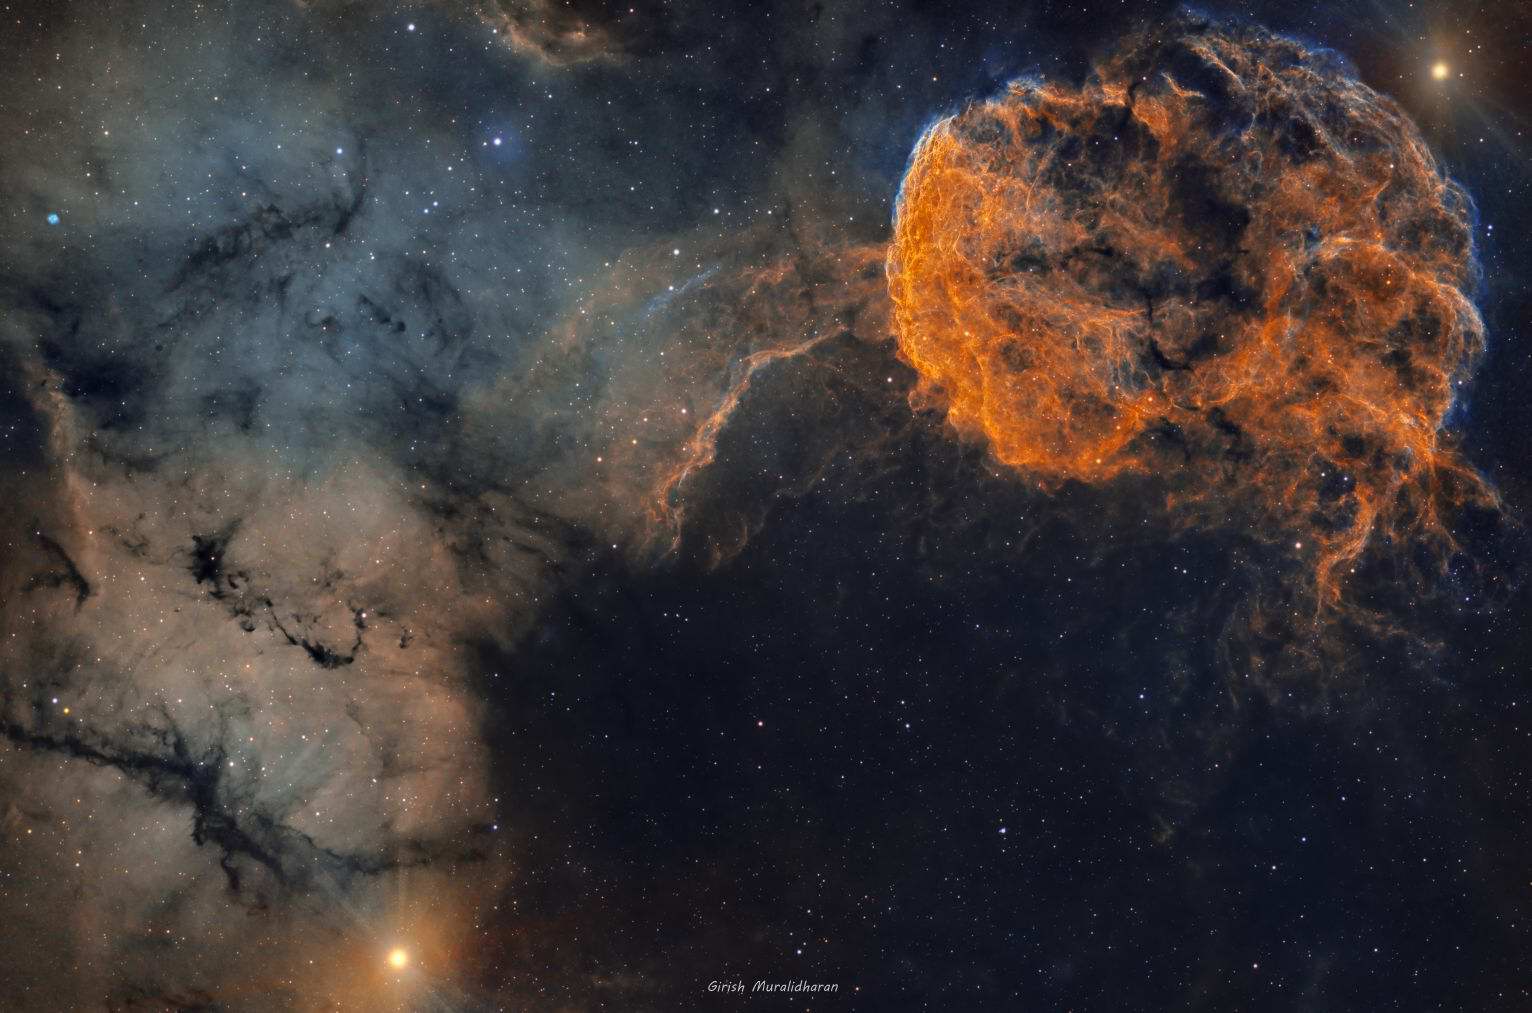 IC 443 - Jelly fish nebula & Sh2-249